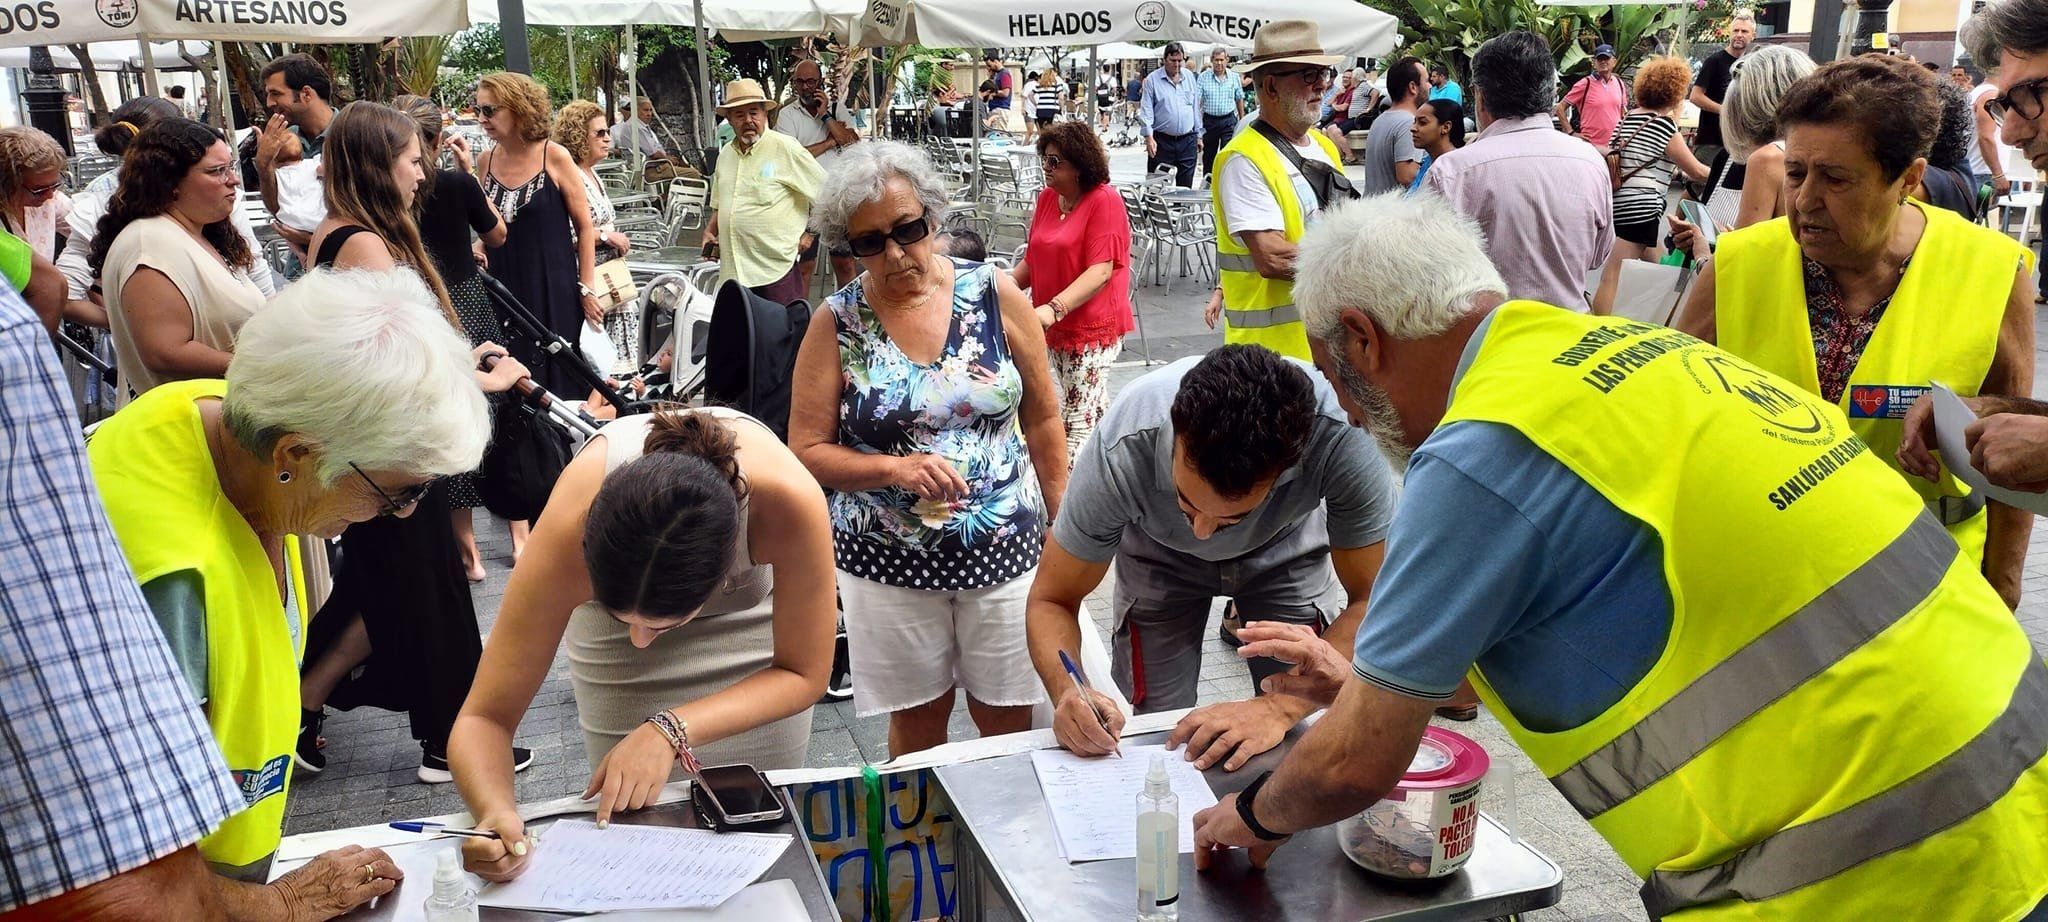 Los pensionistas aceleran su campaña de recogida de firmas contra la "privatización" de pensiones